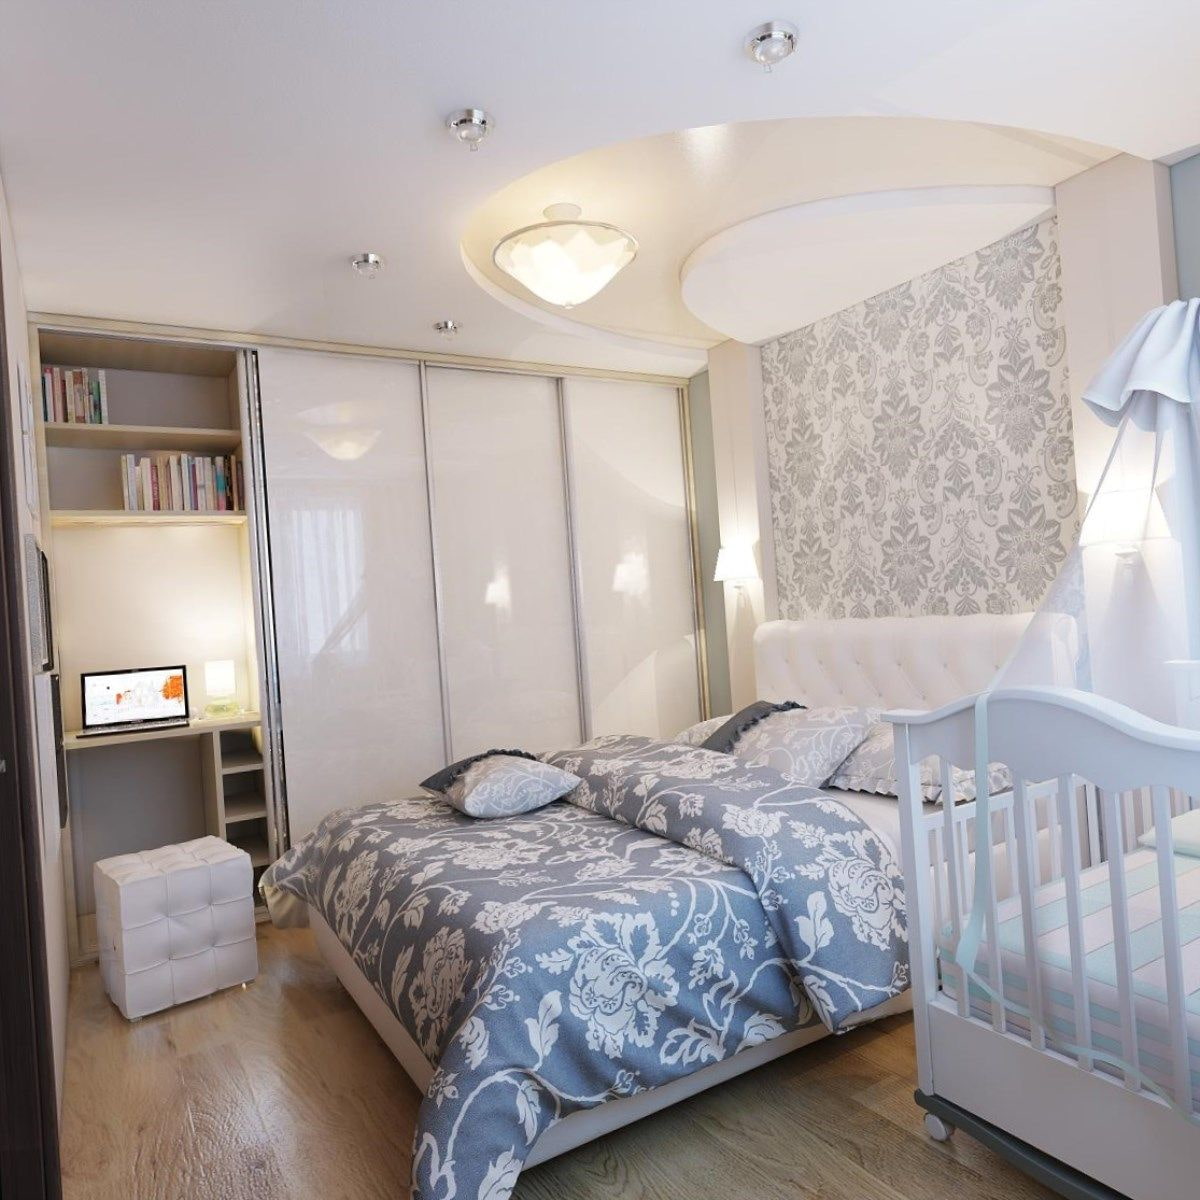 Планировка однокомнатной квартиры с детской кроваткой фото